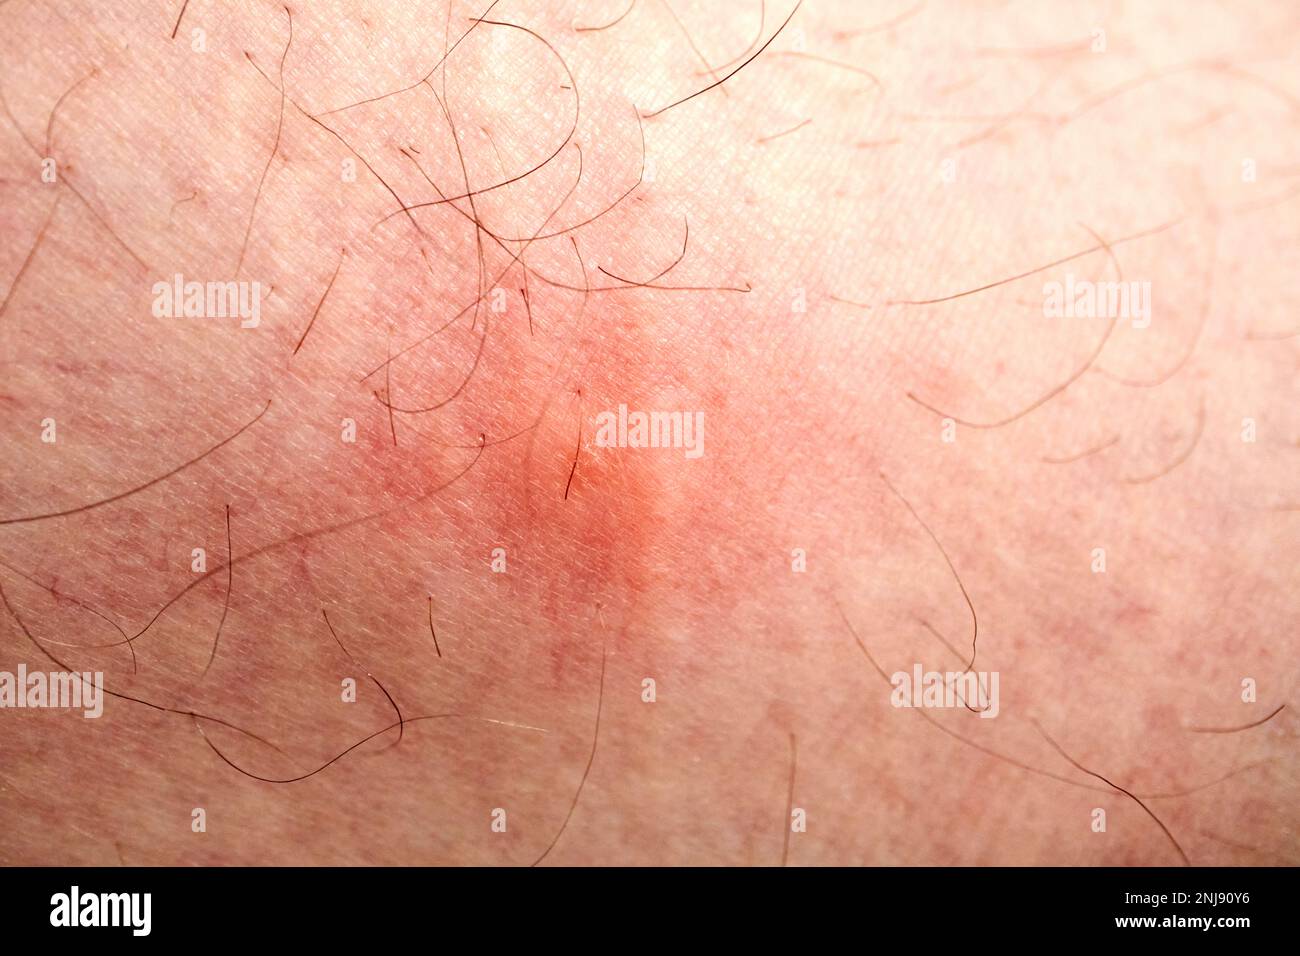 moustique morsure enflée de près sur une jambe Lanzarote, îles Canaries, Espagne Banque D'Images